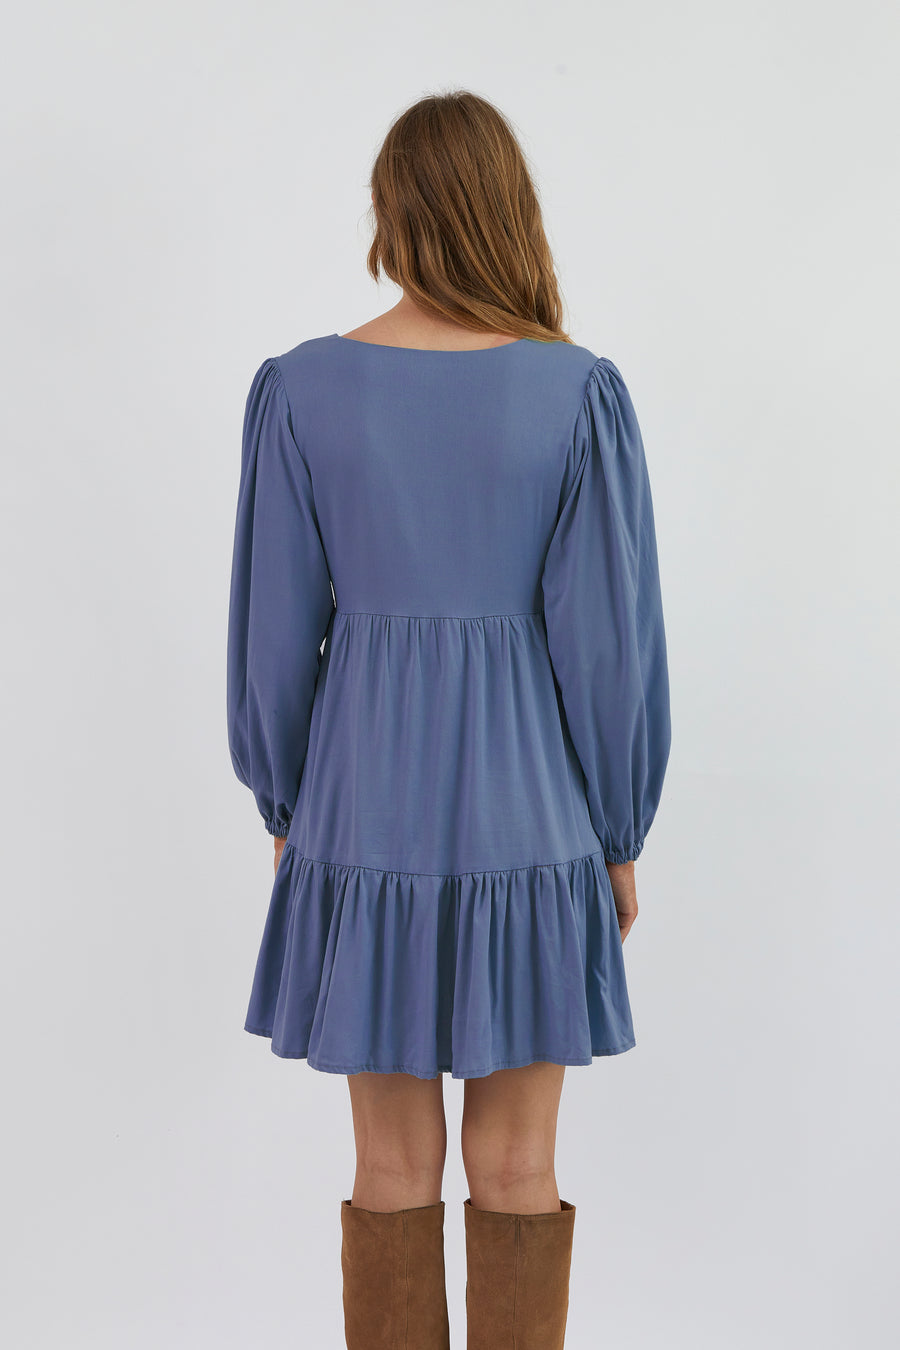 Long Paris Blue dress